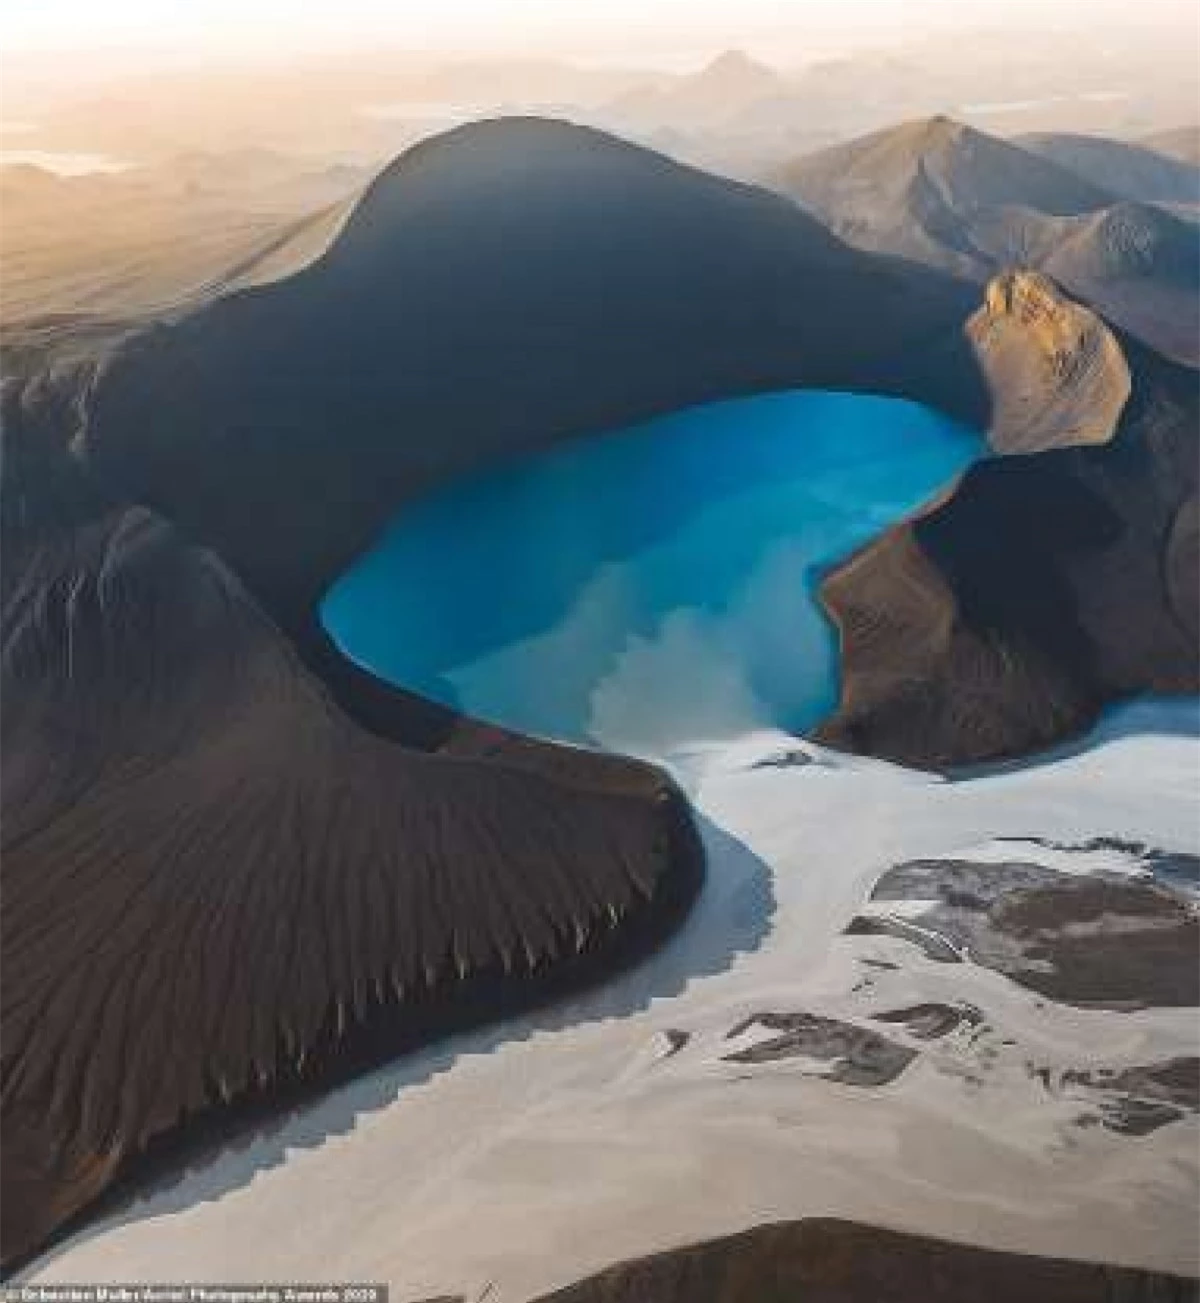 Cảnh tượng từ trên cao của khu vực Cao nguyên Iceland mang vẻ đẹp siêu thực của nhiếp ảnh gia Sebastian Muller khiến chúng ta kinh ngạc.